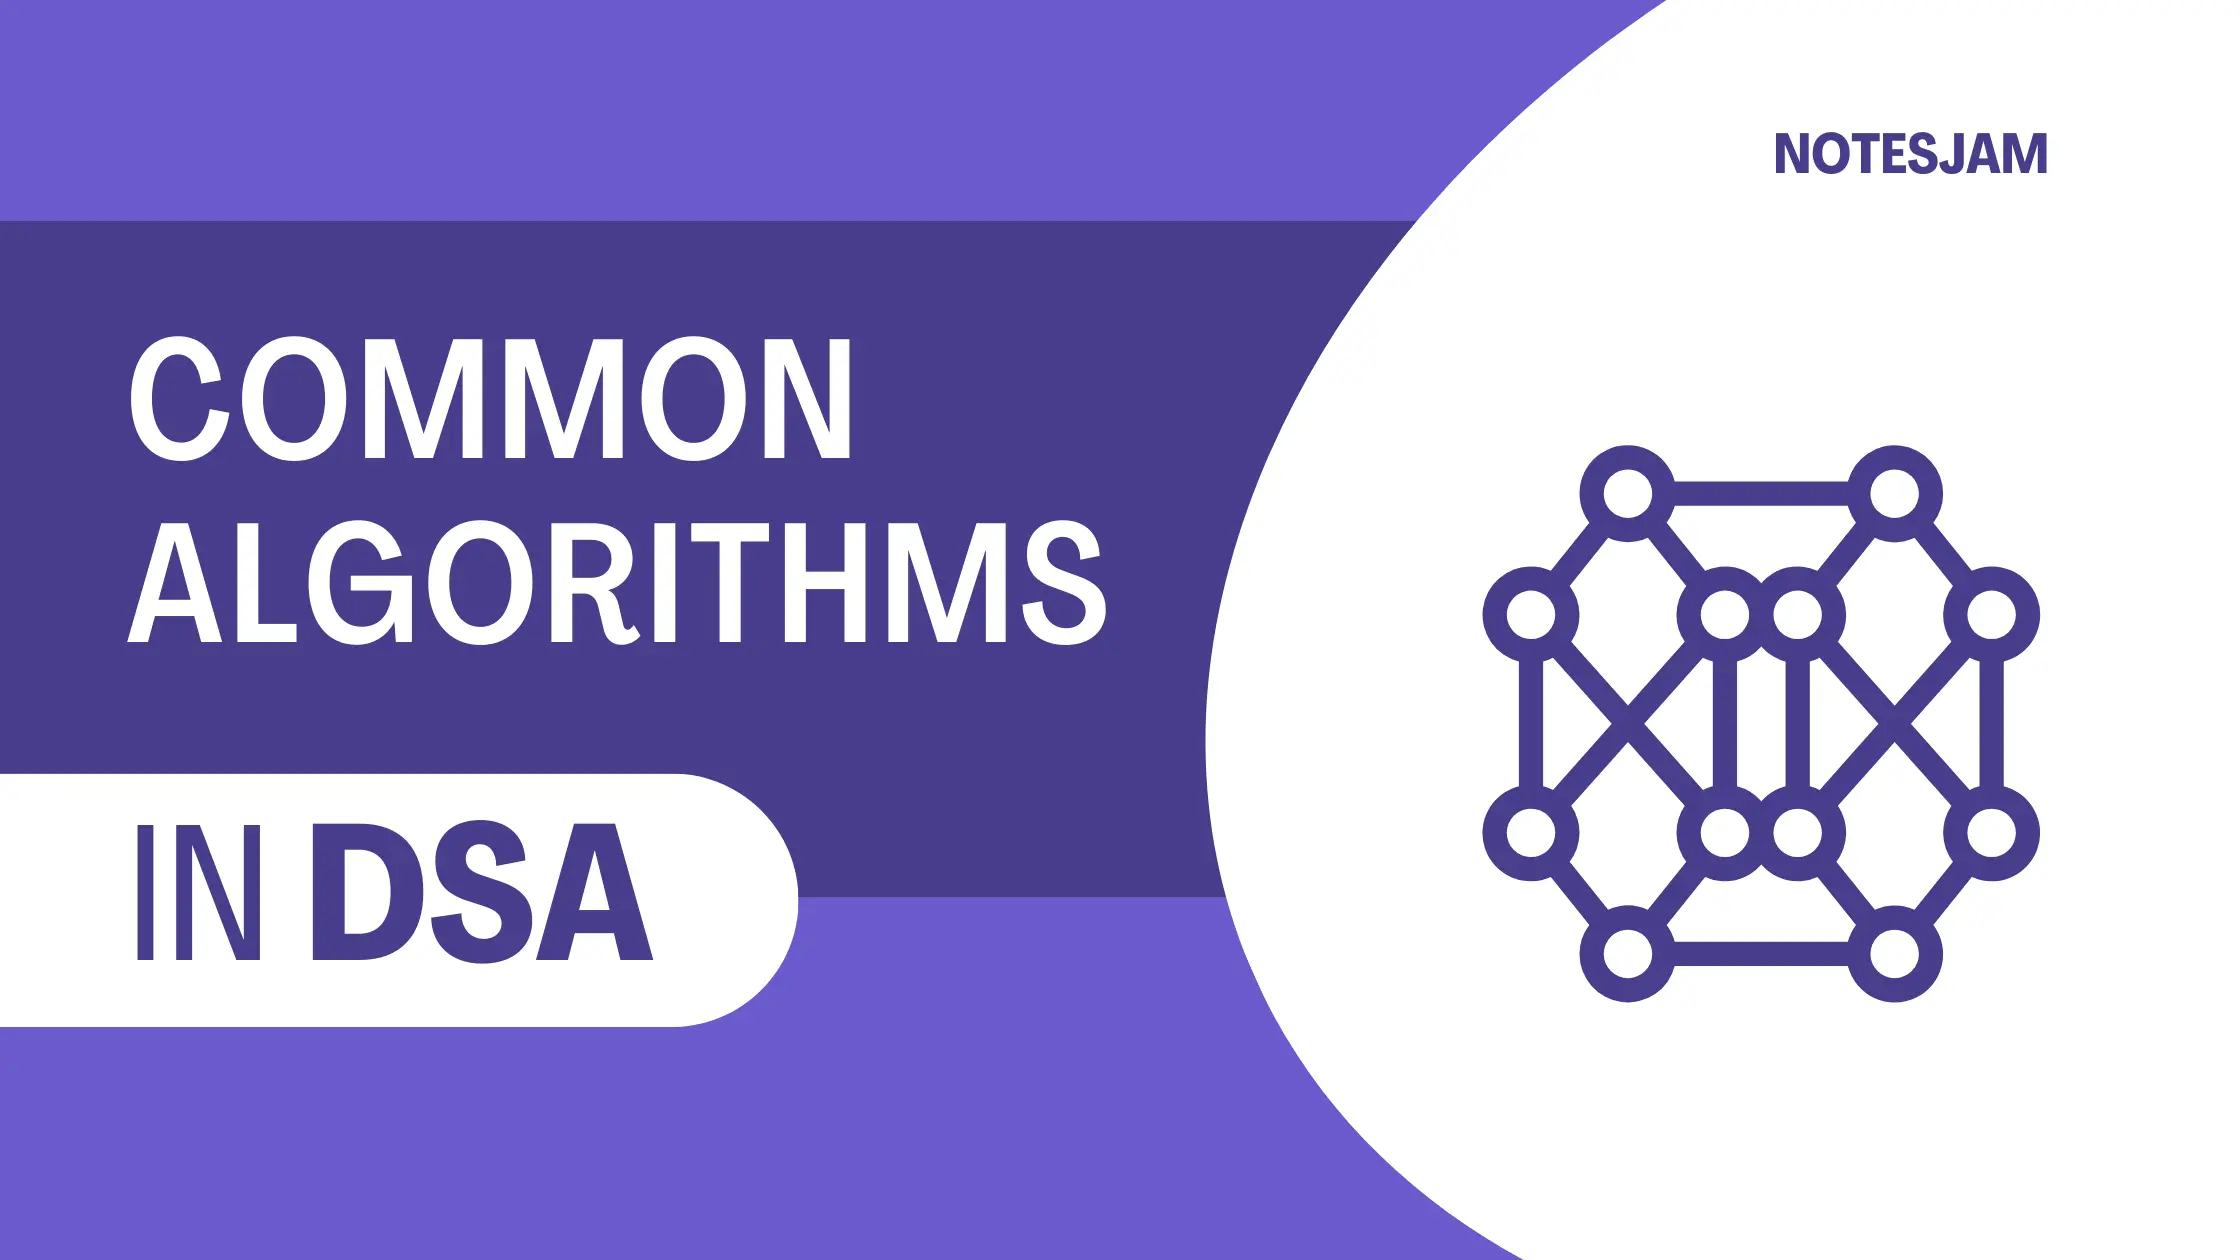 Common algorithms in DSA